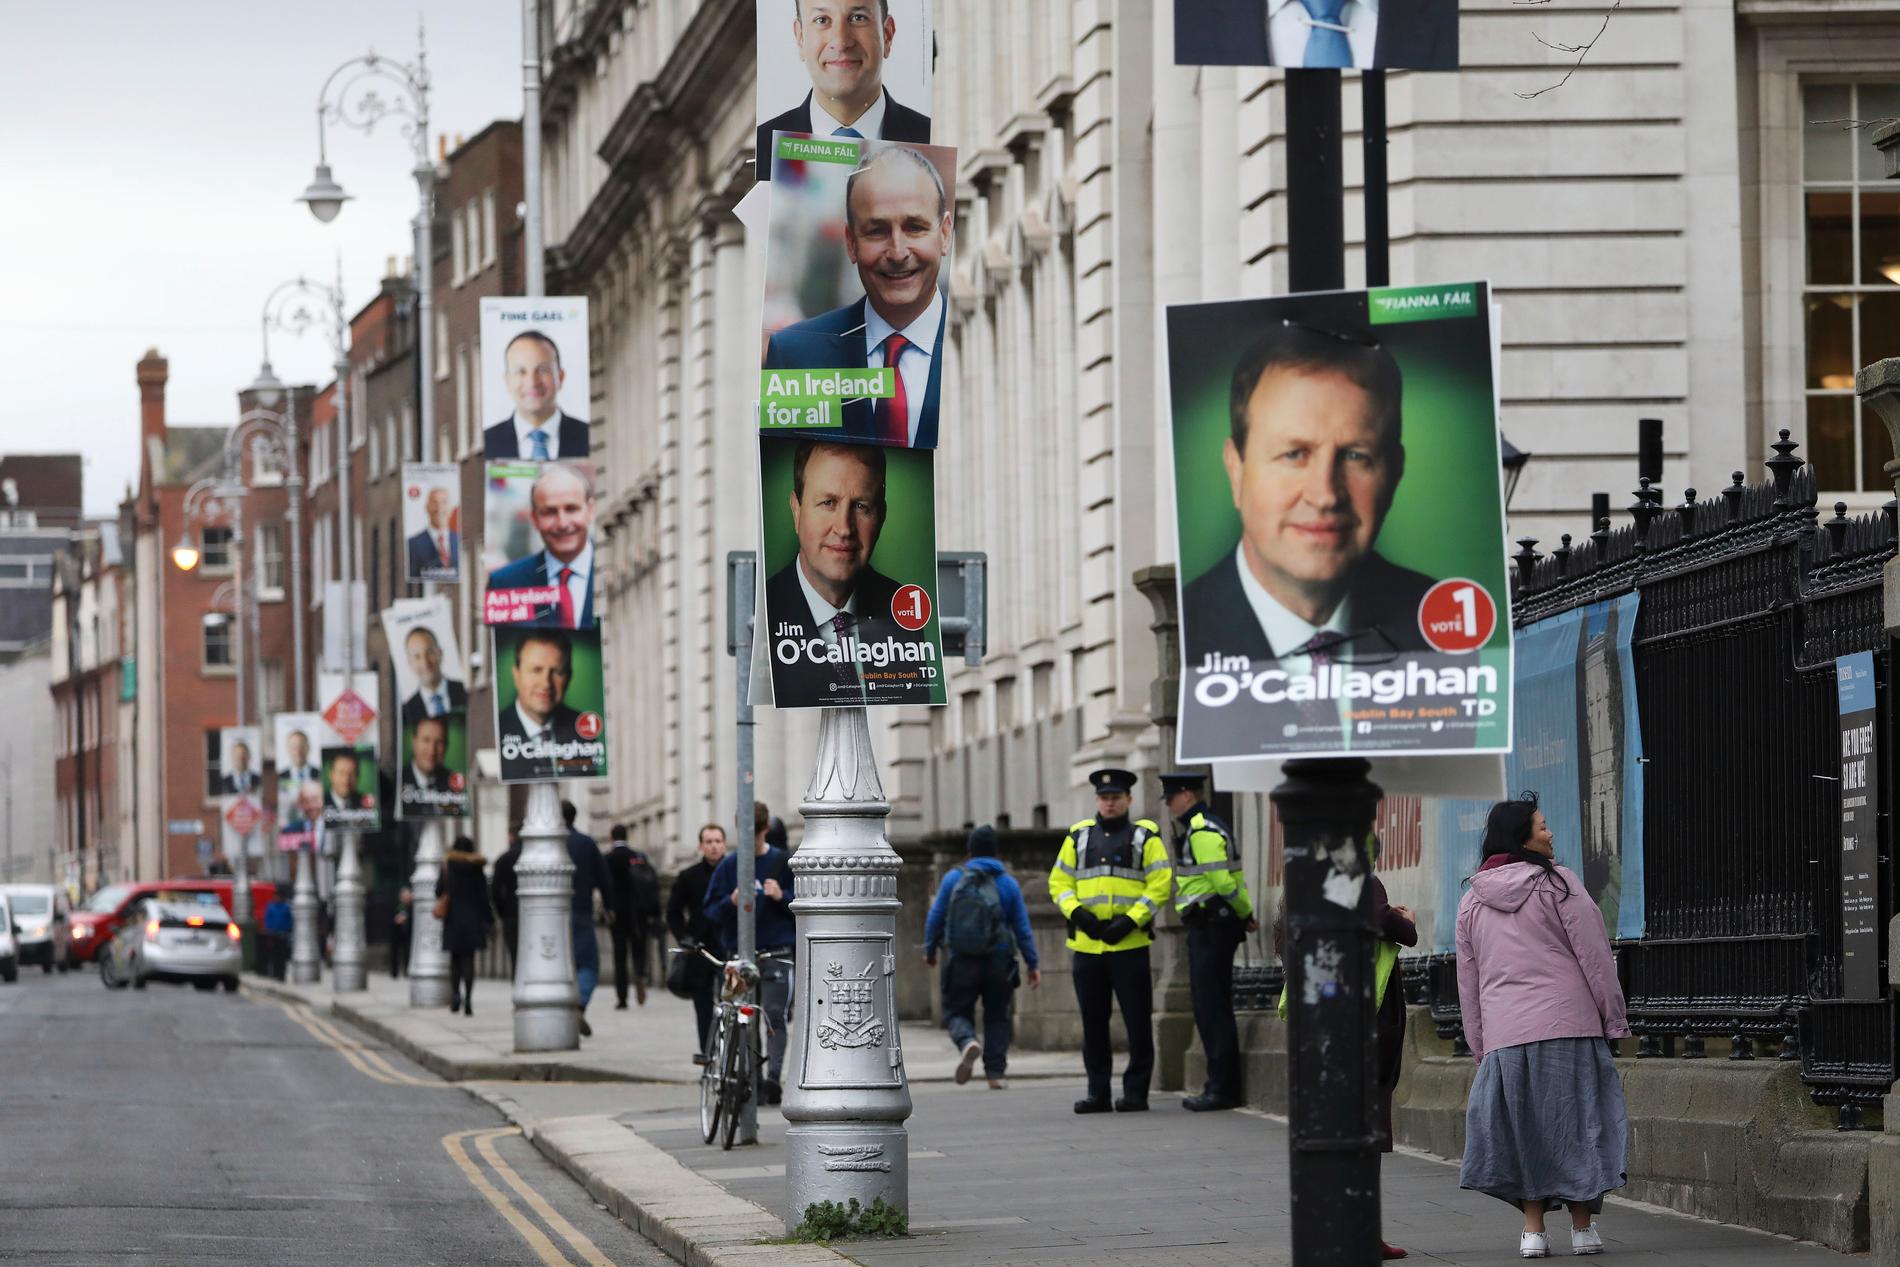 Irlands huvudstad Dublin är fylld av porträtt på hugade parlamentsledamöter. På lyktstolpen närmast sitter Jim O'Callaghan, som hoppas bli justitieminister om hans högerliberala Fianna Fáil vinner valet.